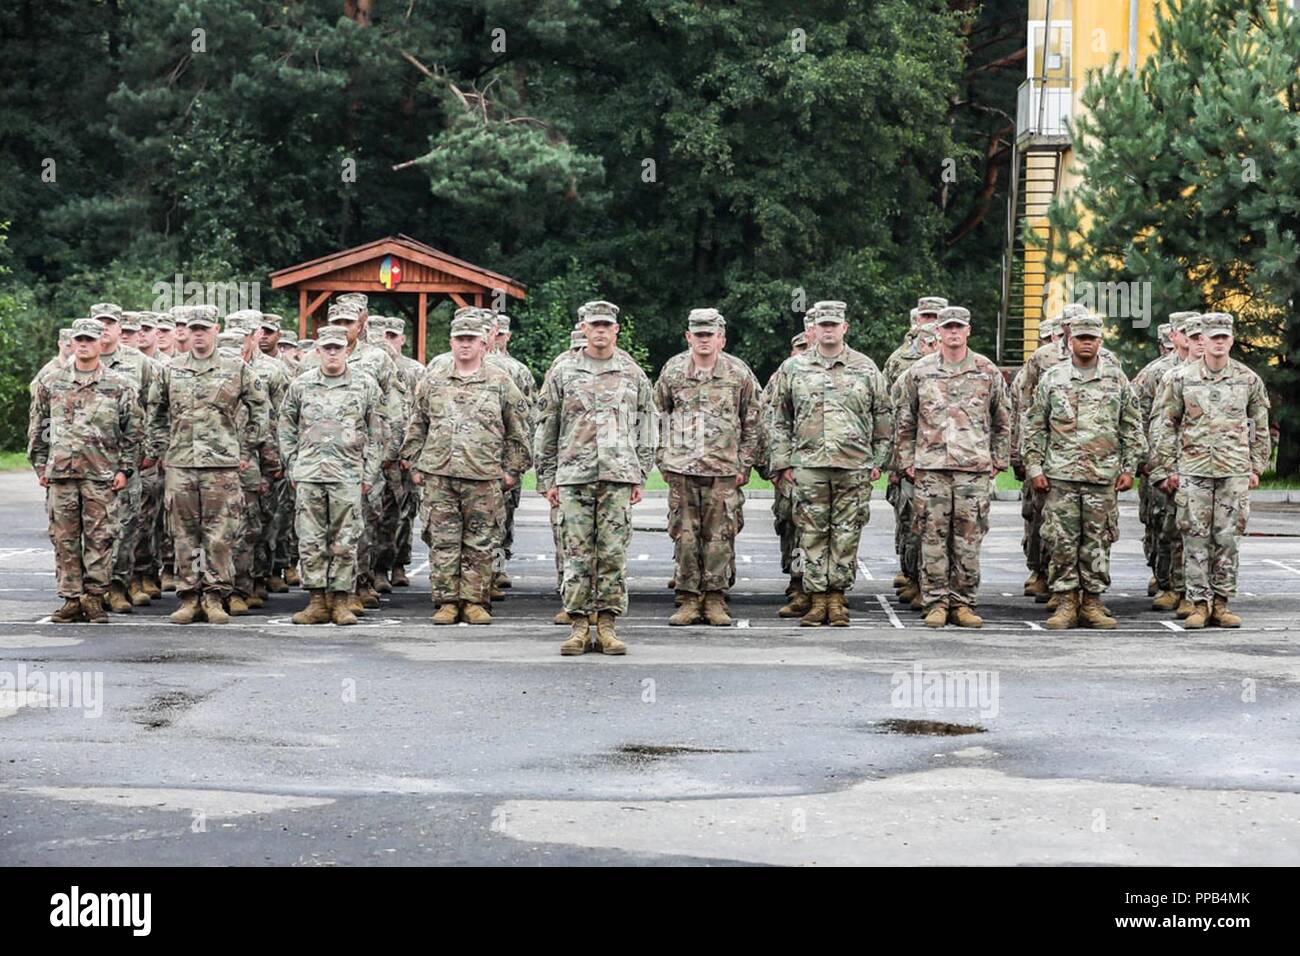 soldados-de-tennessees-278-o-regimiento-de-caballeria-estan-formados-durante-la-ceremonia-de-apertura-del-dia-de-las-fuerzas-armadas-polacas-celebraron-en-yavoriv-ucrania-el-15-de-agosto-ppb4mk.jpg